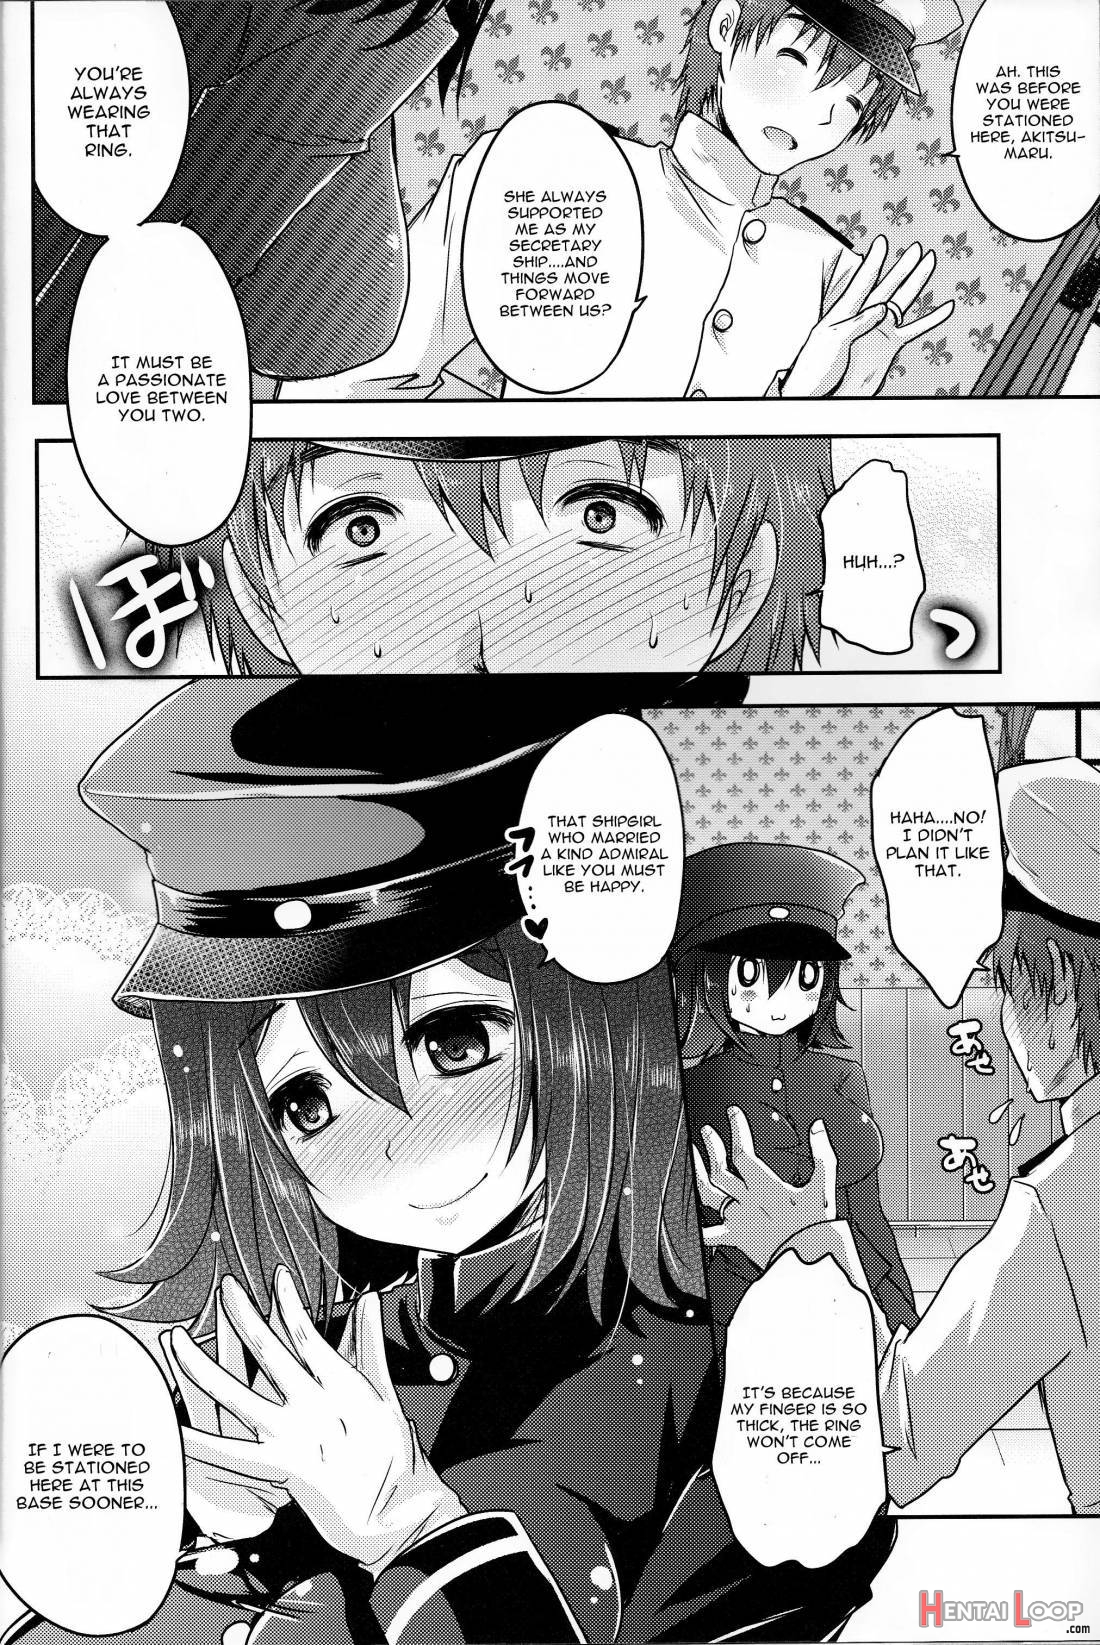 Kinzoku No Wa page 3